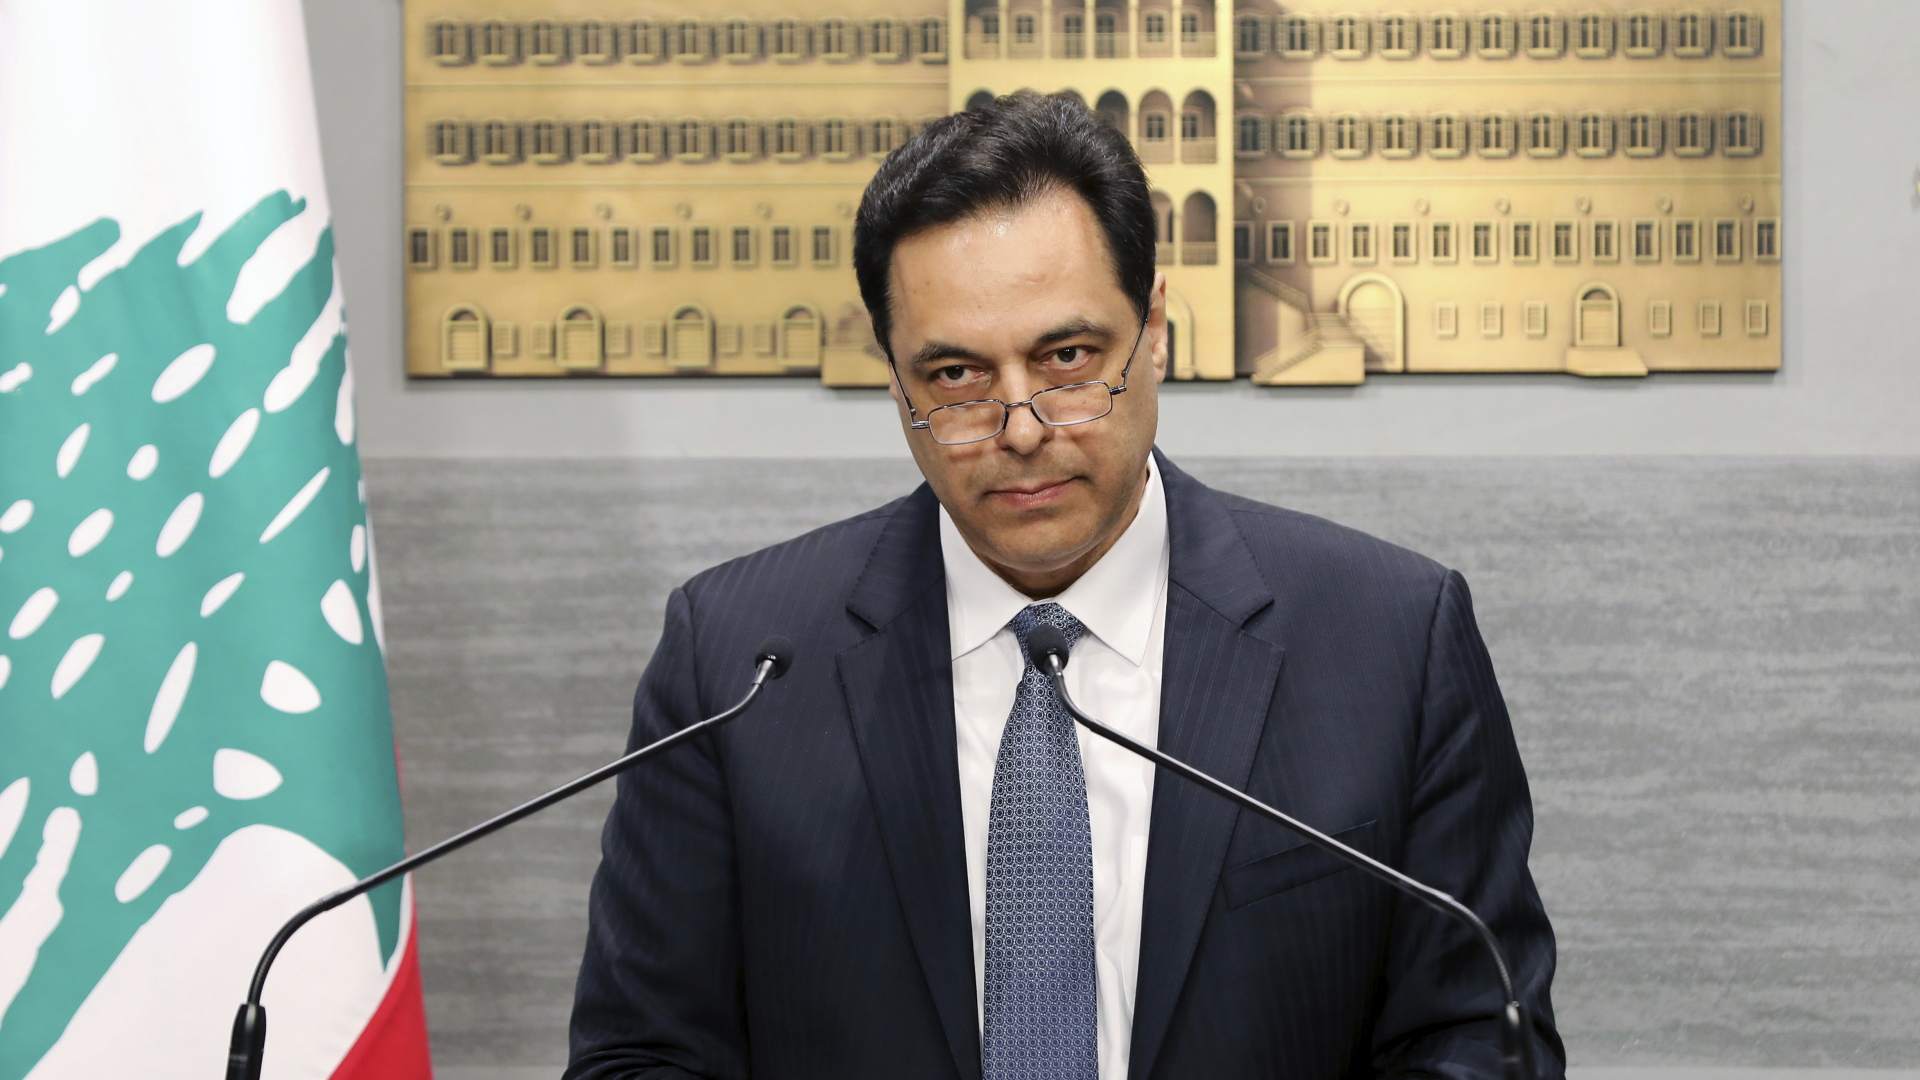 Libanons Ministerpräsident Hassen Diab hält eine Rede in der Nationalversammlung. | dpa